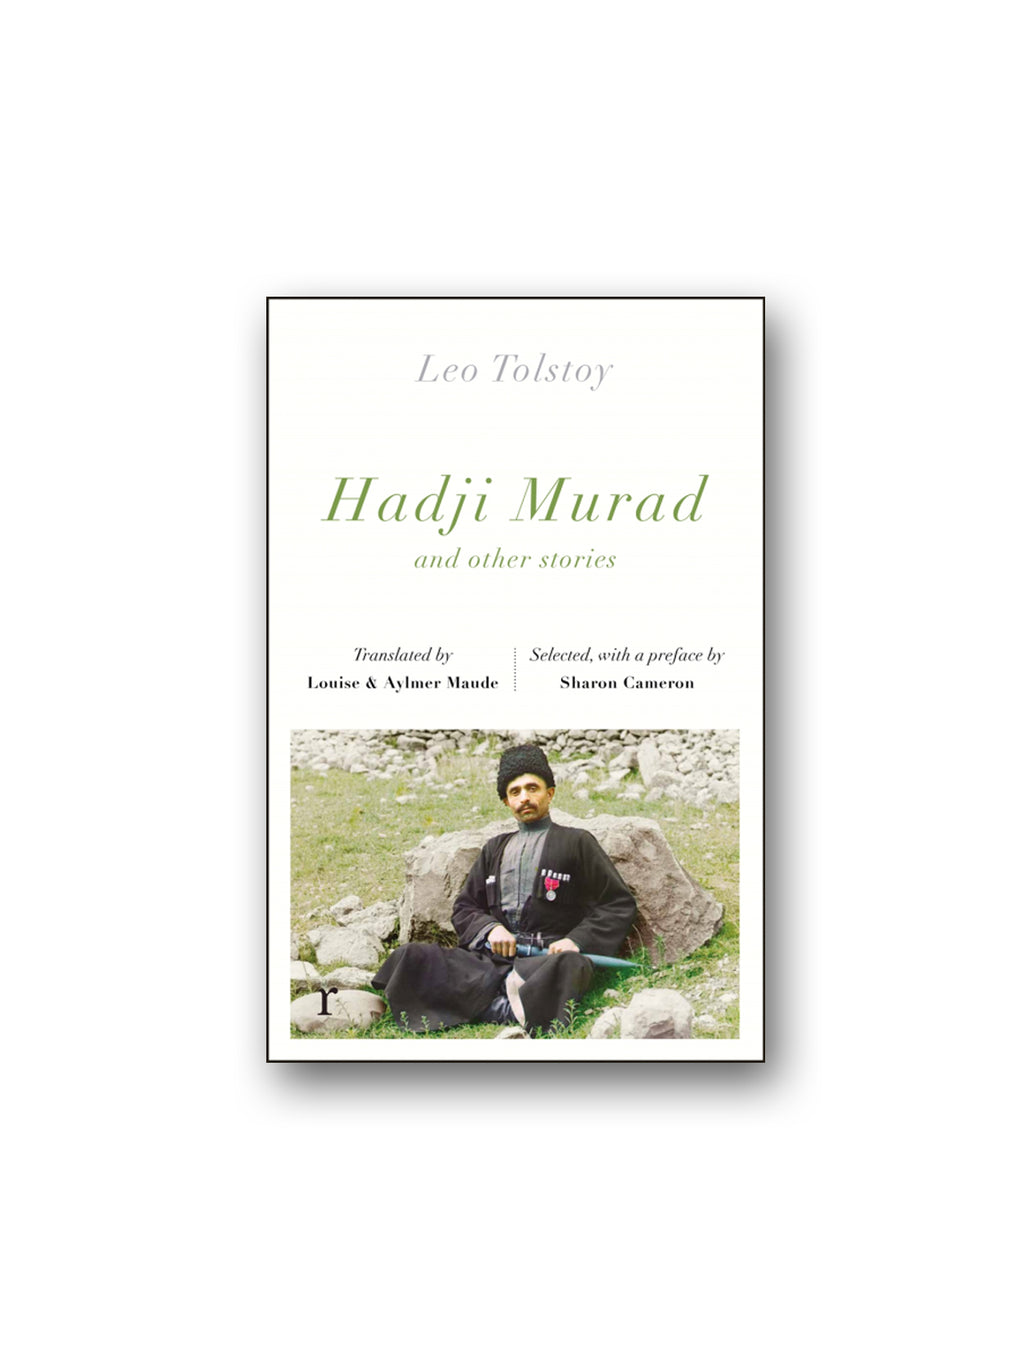 Hadji Murad and other stories